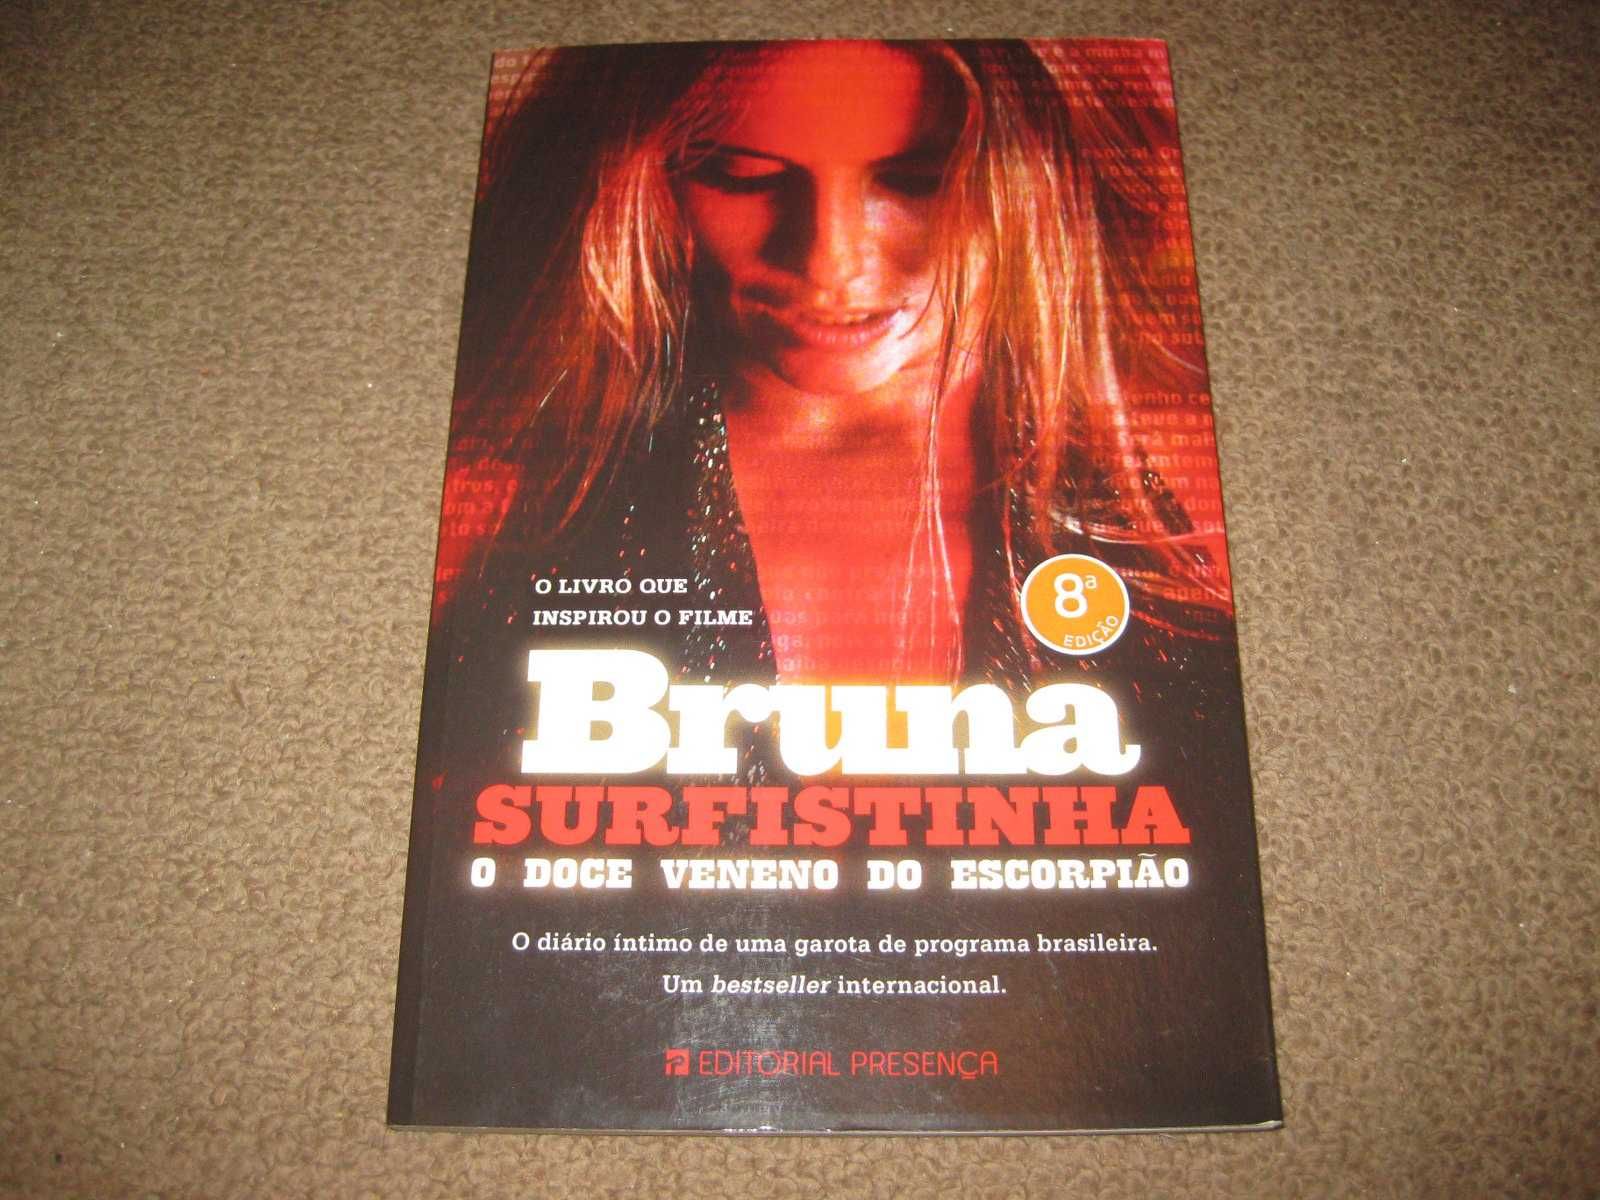 Livro "O Doce Veneno do Escorpião" de Bruna Surfistinha